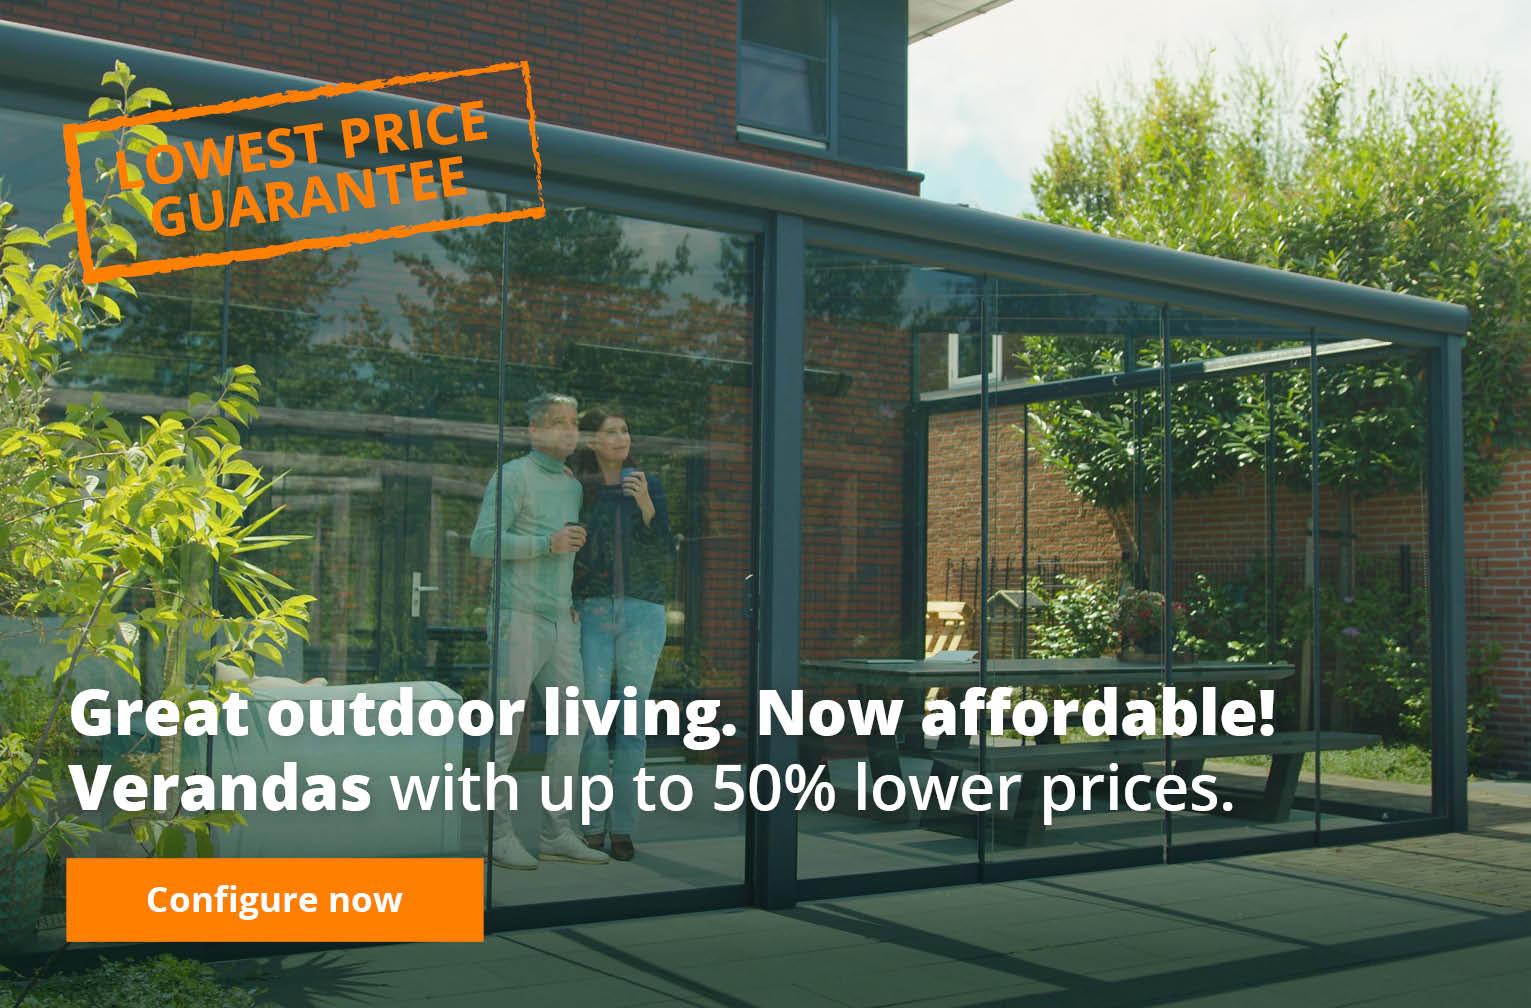 All verandas lowest price guarantee